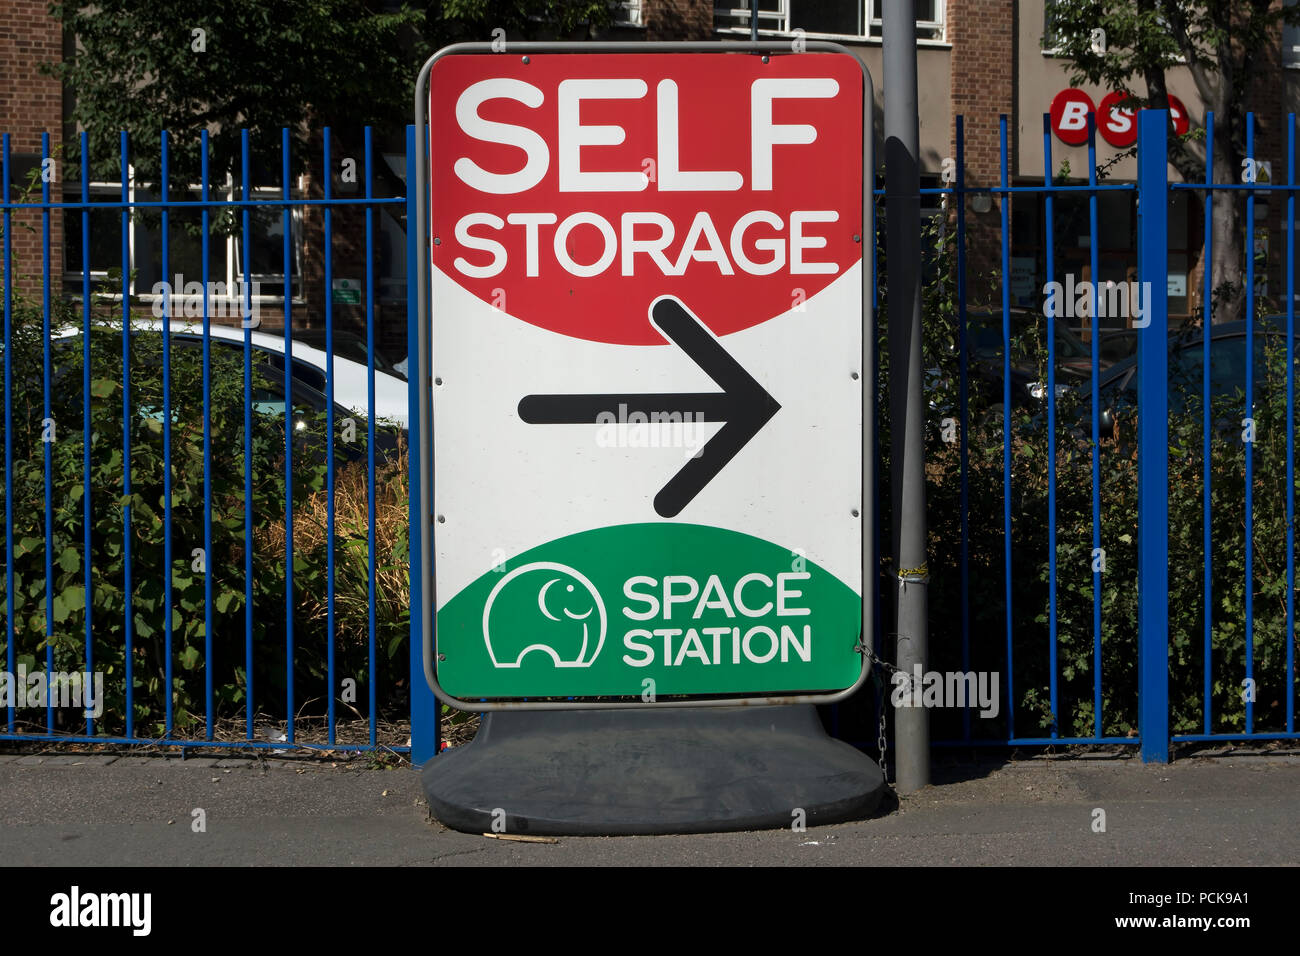 Scheda permanente annuncio stradale e le indicazioni per un proprio impianto di stoccaggio chiamato stazione spaziale di Brentford, Londra, Inghilterra Foto Stock